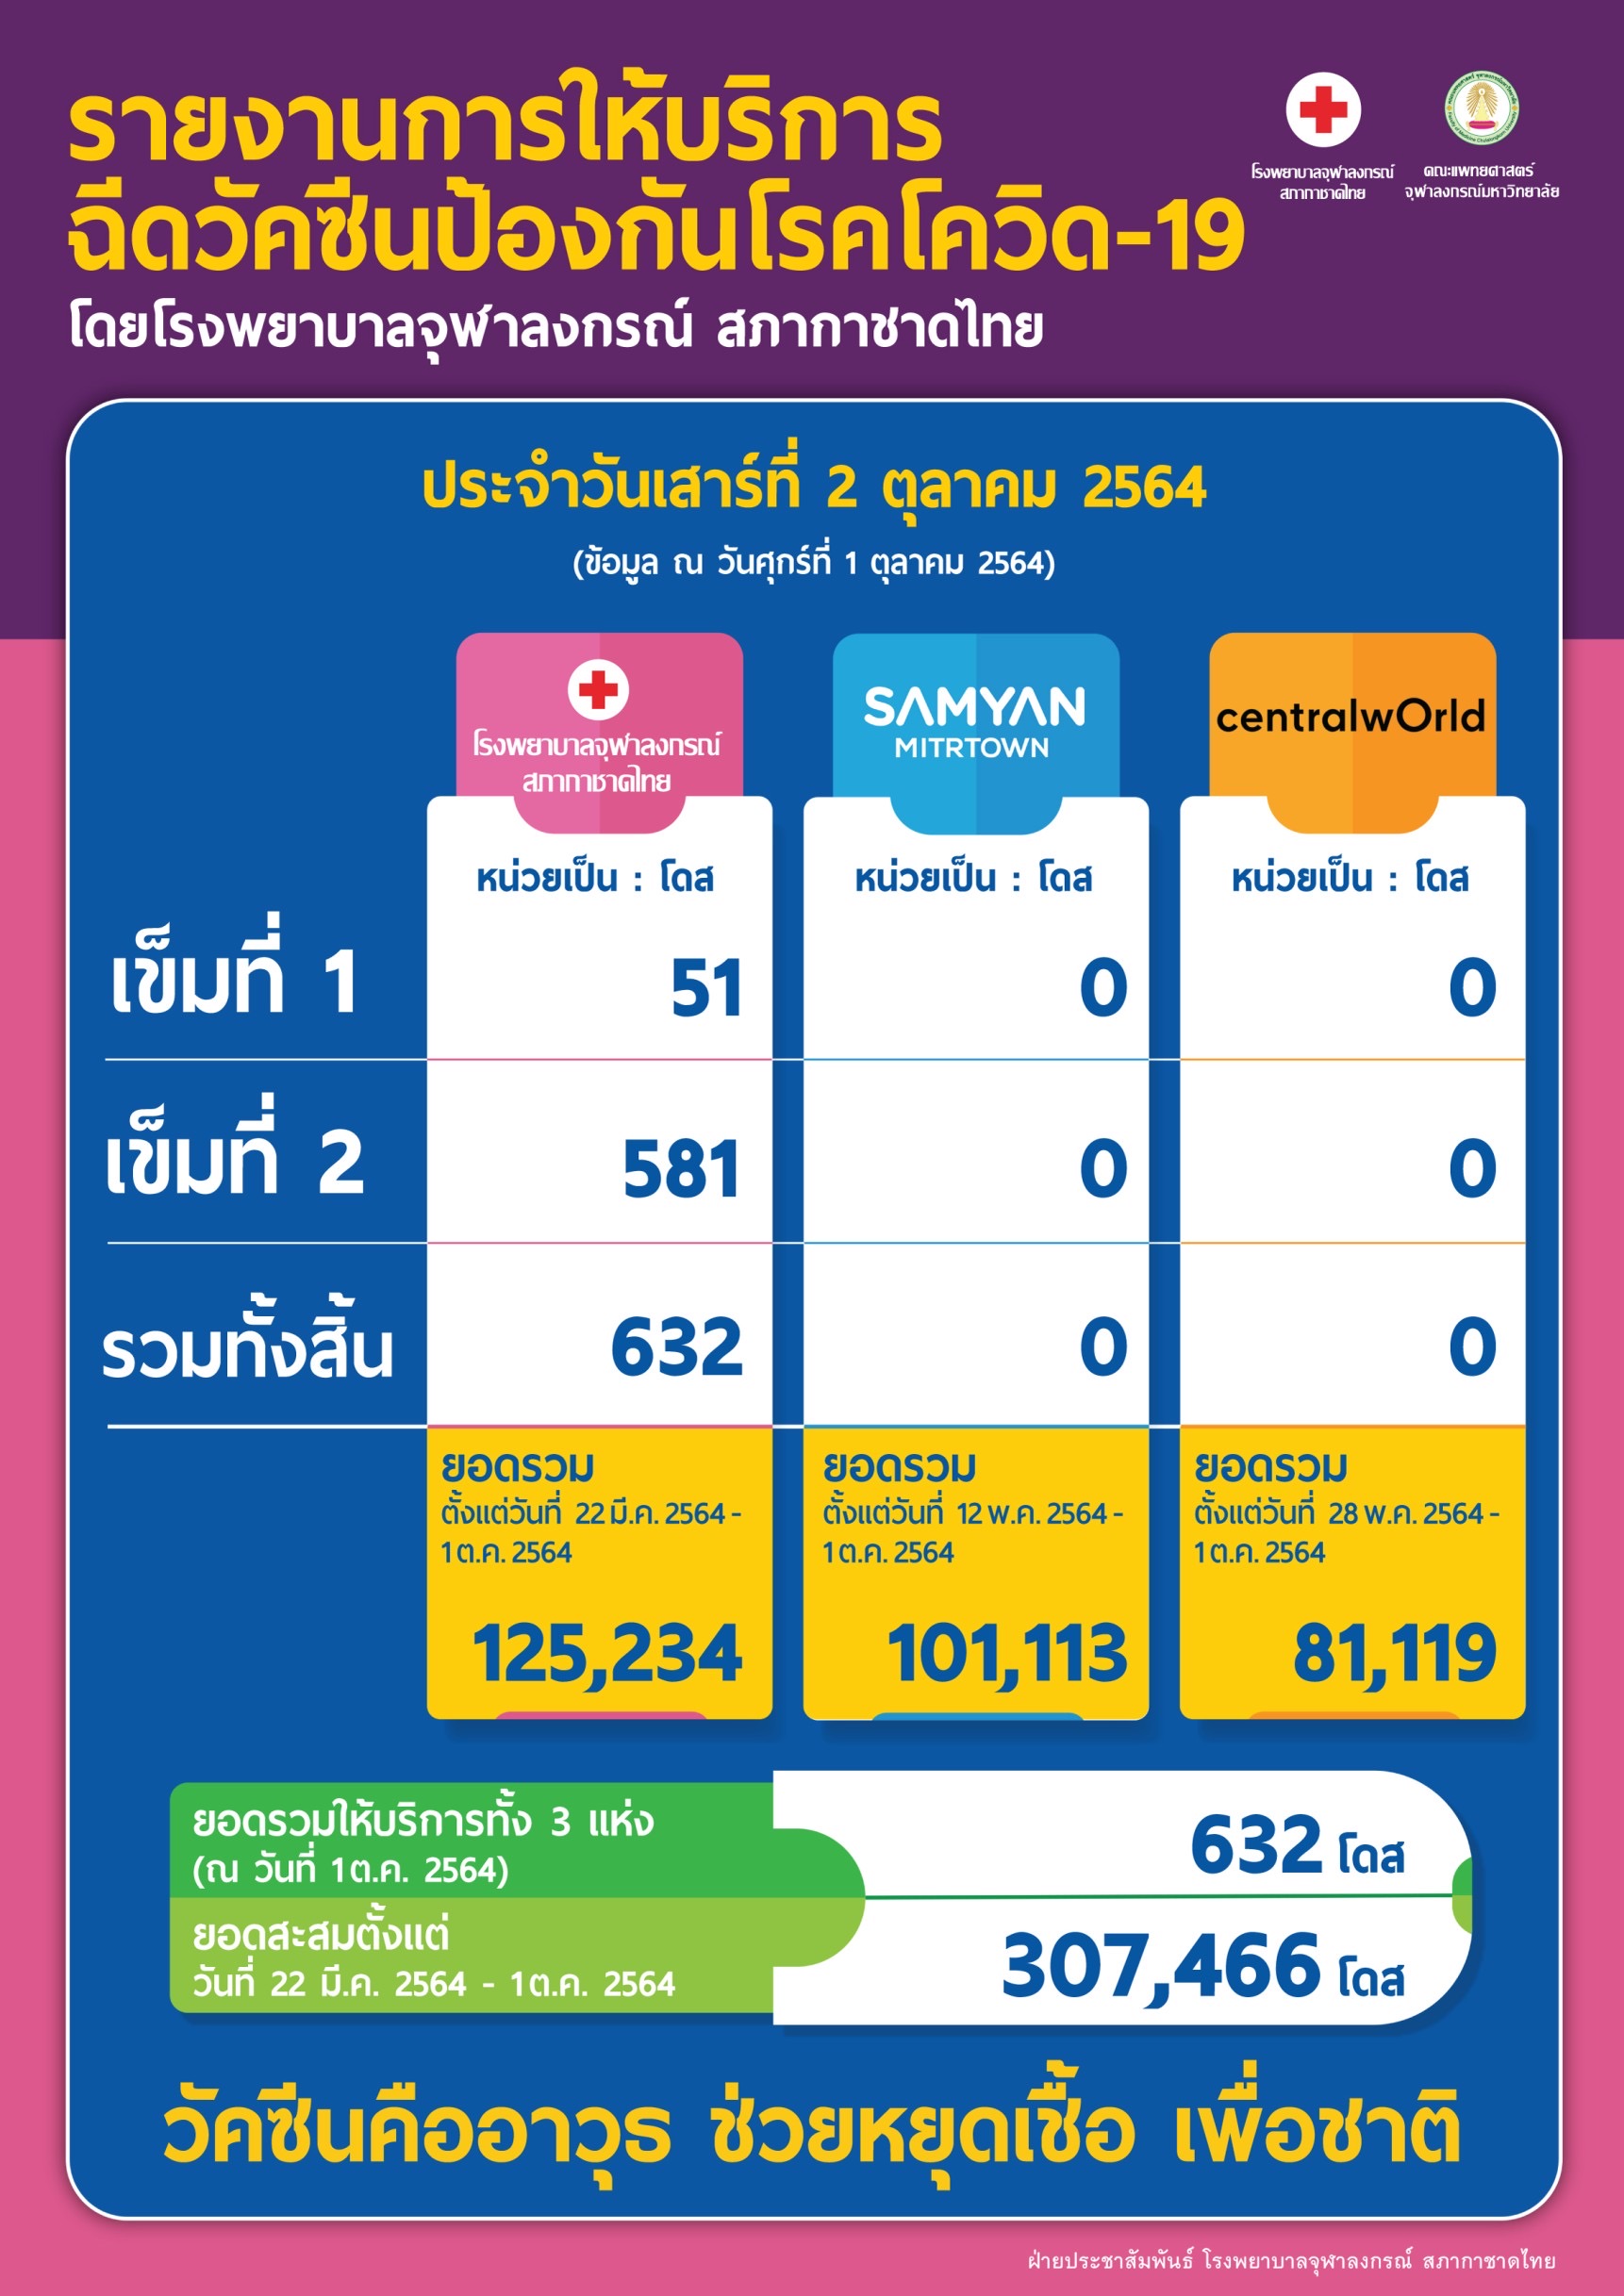 รายงานการให้บริการ ฉีดวัคซีนป้องกันโรคโควิด-19 โดยโรงพยาบาลจุฬาลงกรณ์ สภากาชาดไทย ประจำวันเสาร์ที่ 2 ตุลาคม 2564